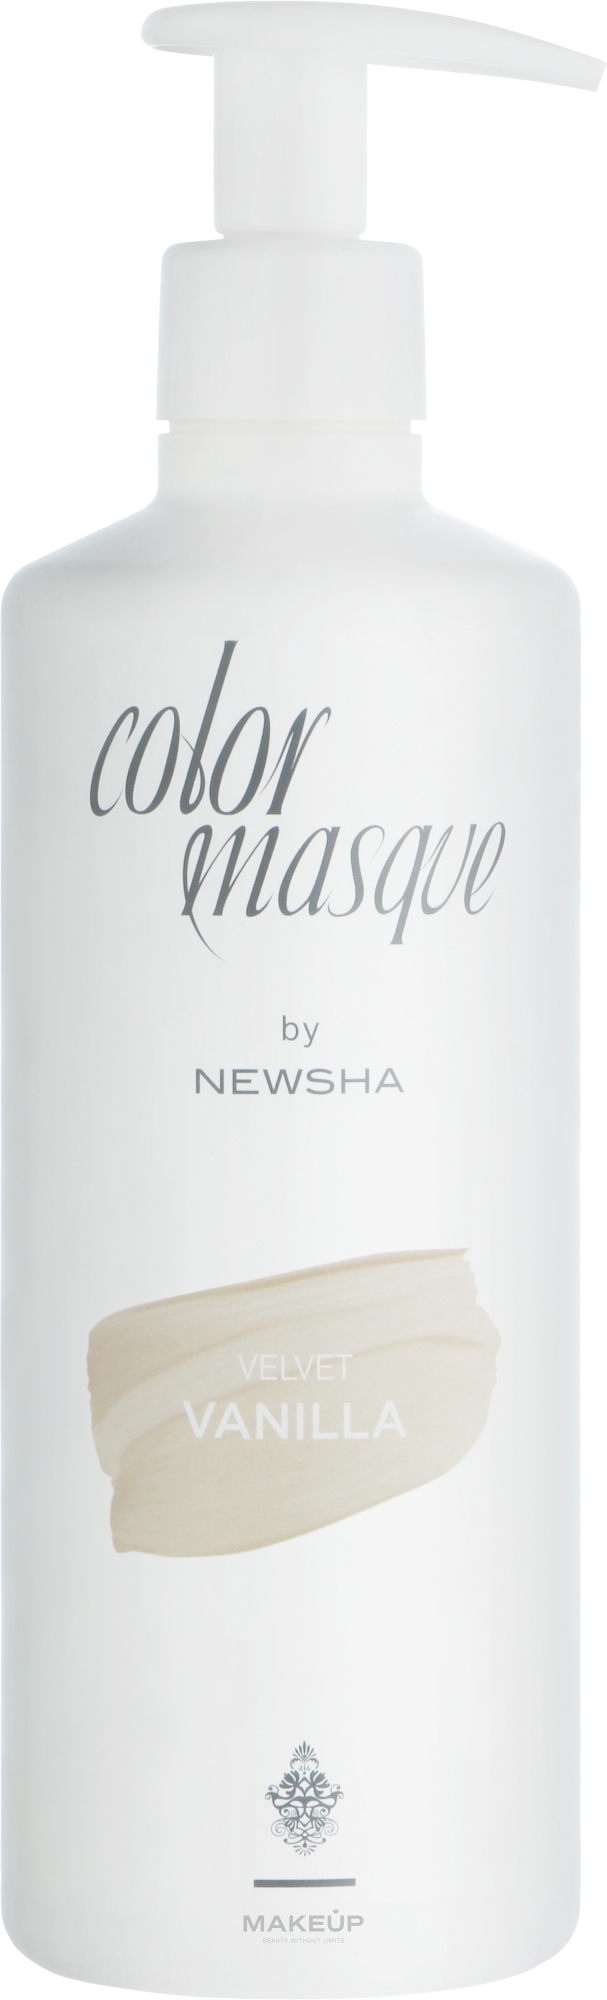 Цветная маска для волос - Newsha Color Masque Velvet Vanilla — фото 500ml